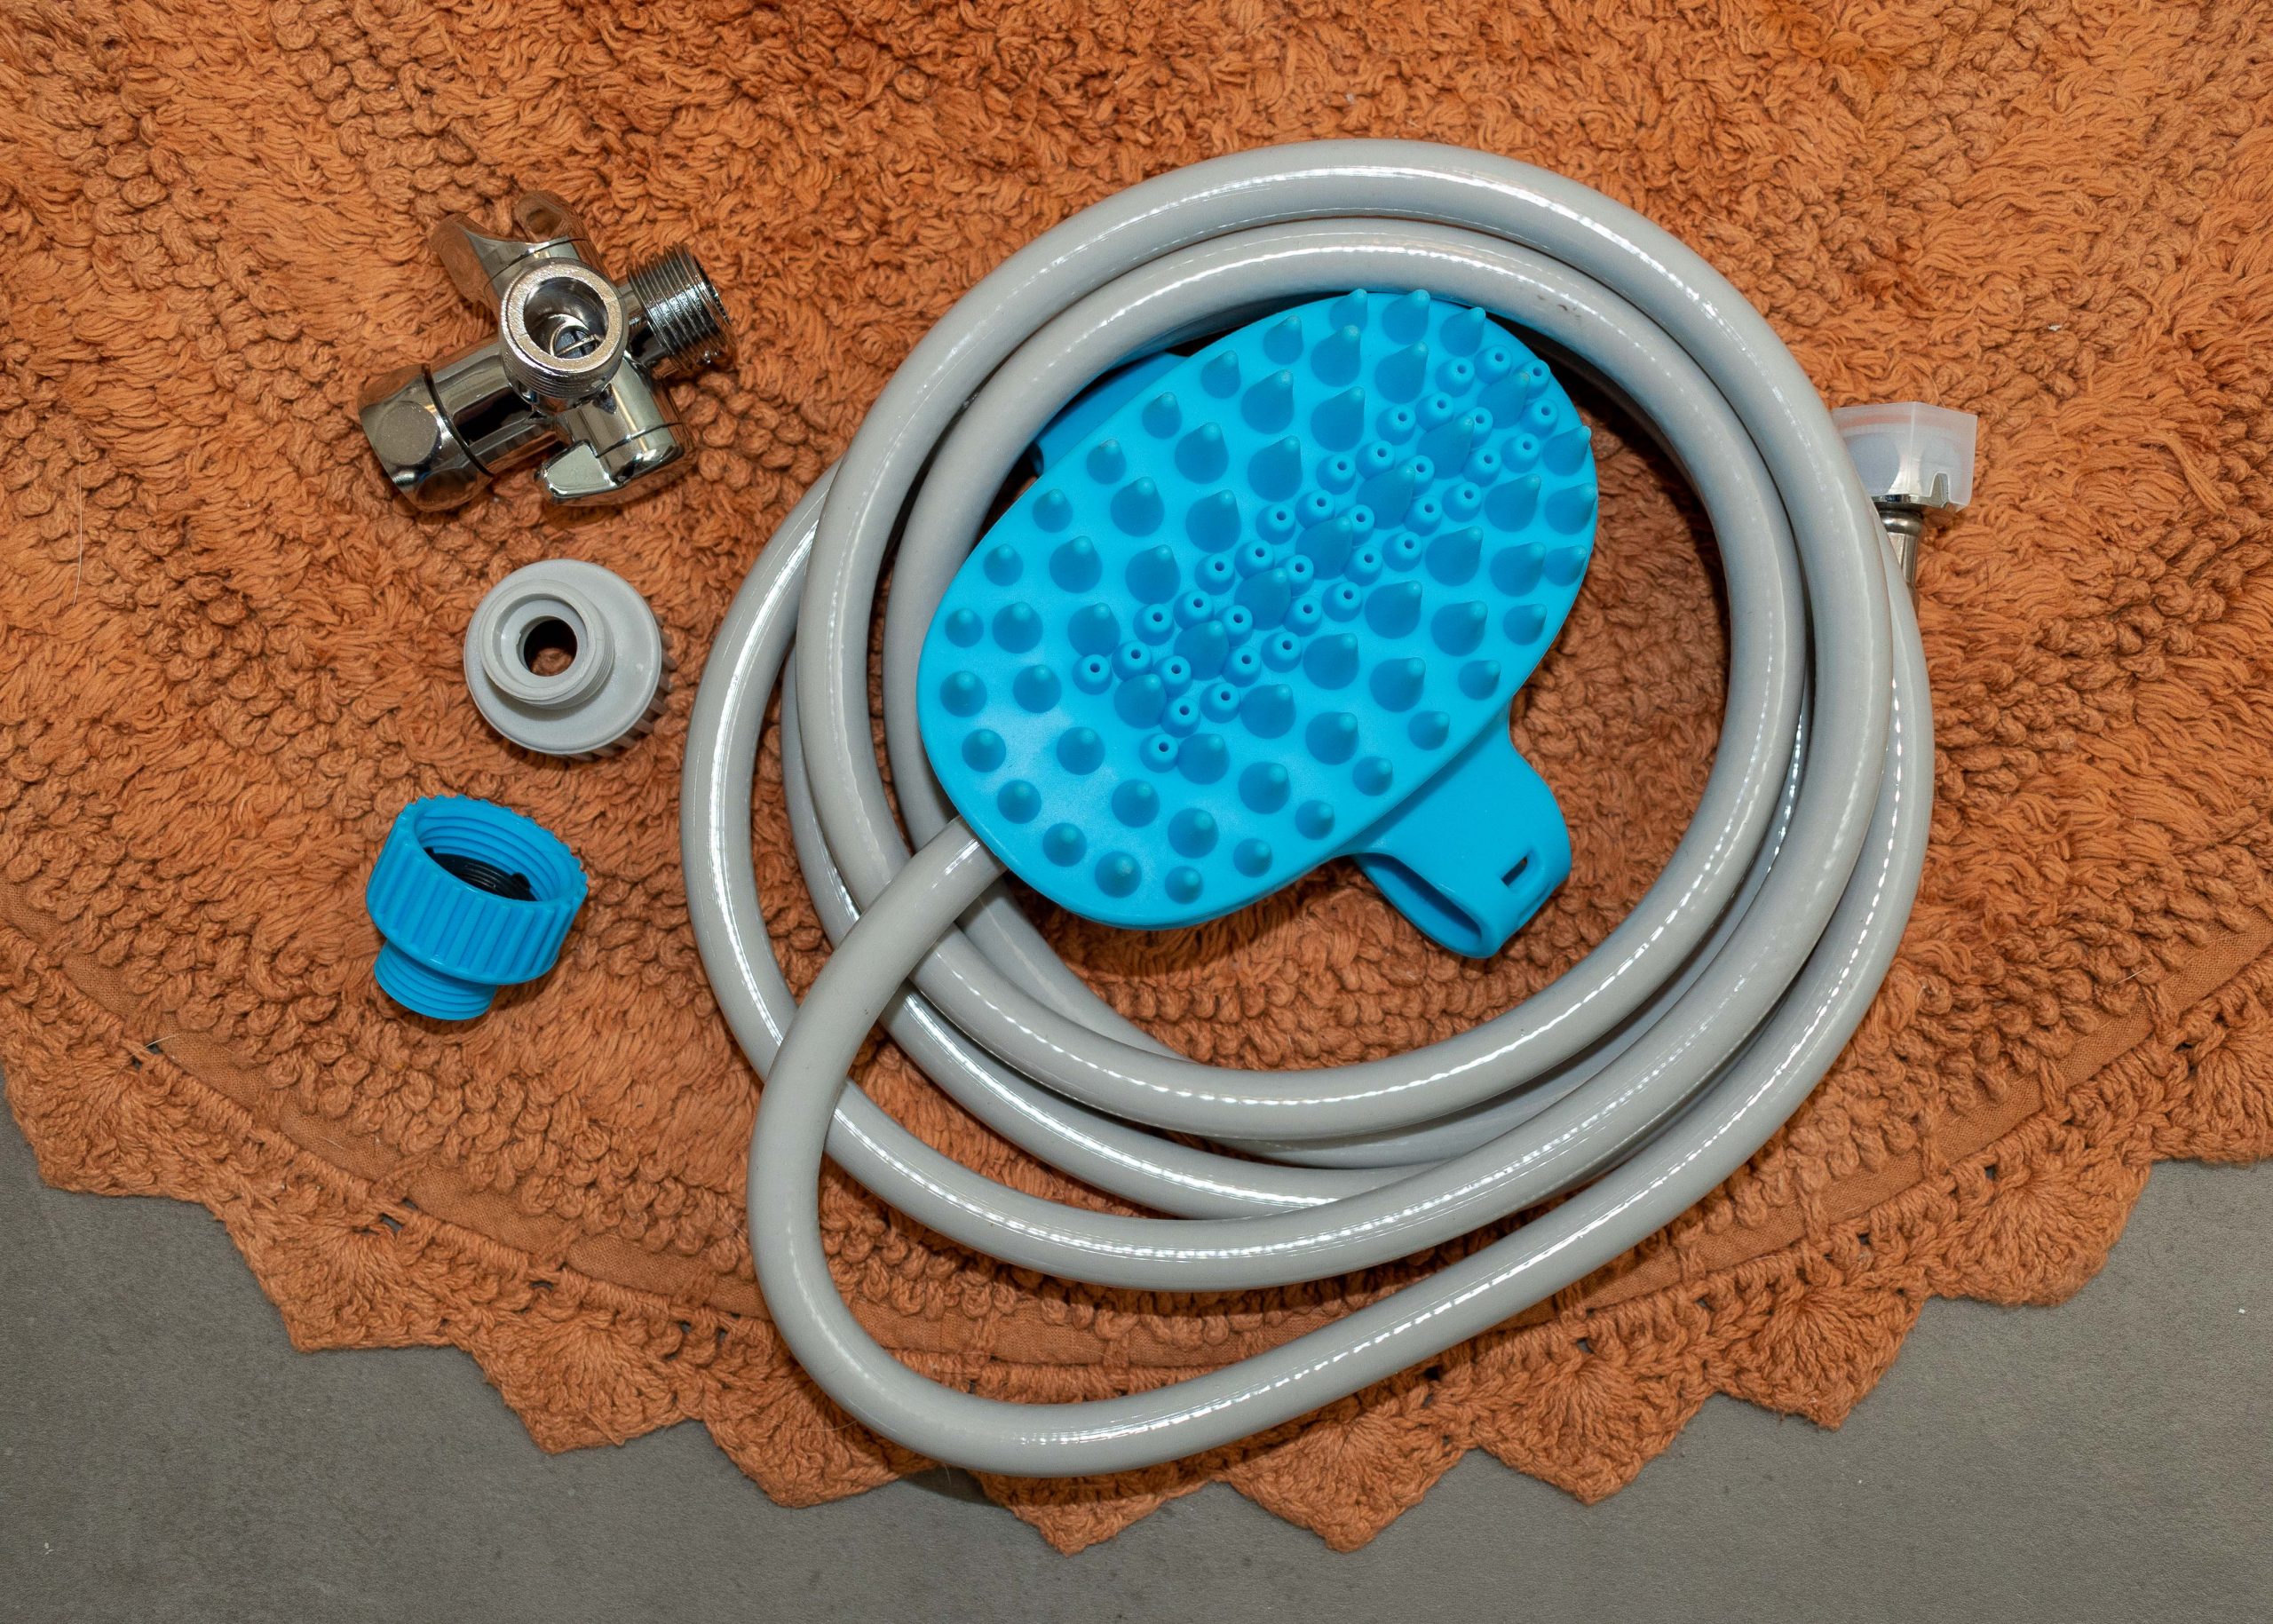 Aquapaw with attached hose, shower adaptor, and garden hose adaptors